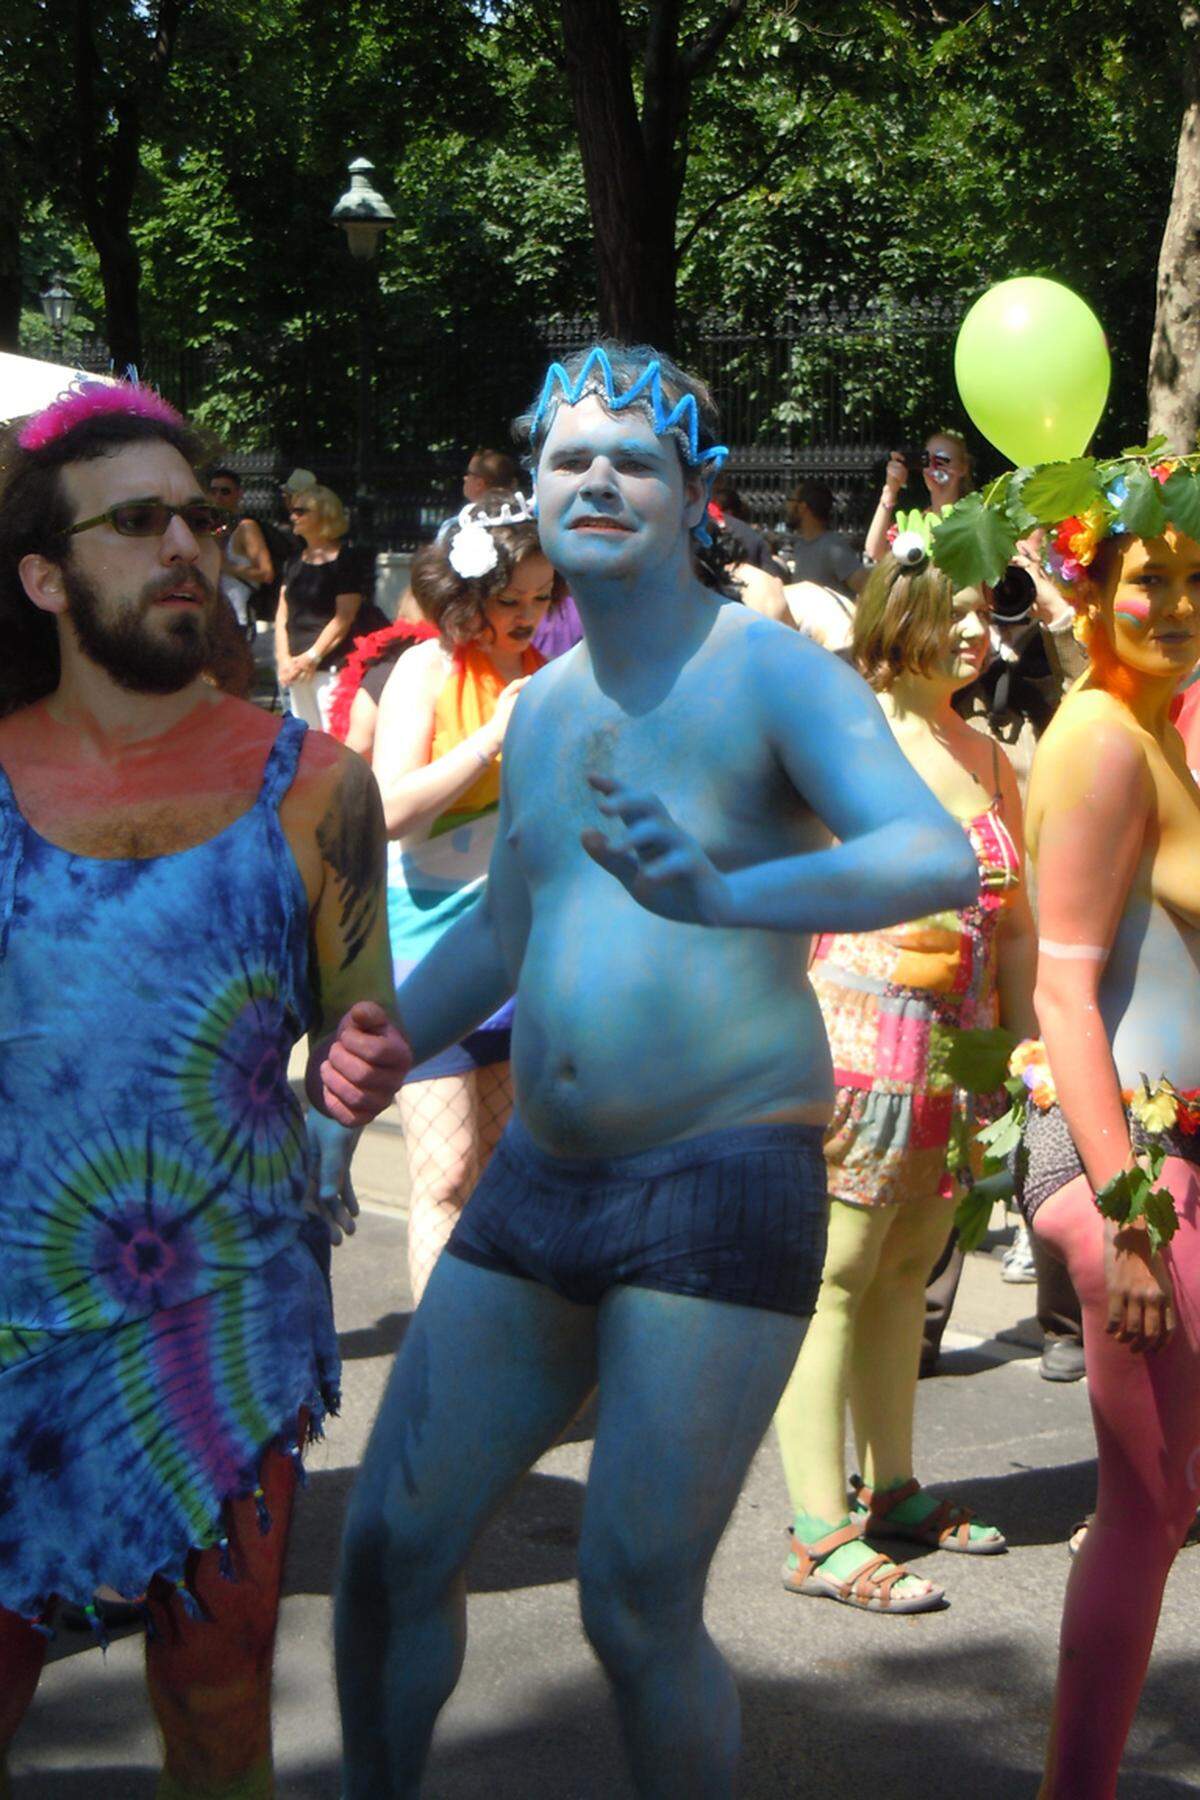 Dieses Jahr war Bodypainting sehr gefragt. Nicht nur die Pridegirls und Prideboys, die die Parade anführten, waren am ganzen Körper in Regenbogenfarben bemalt.